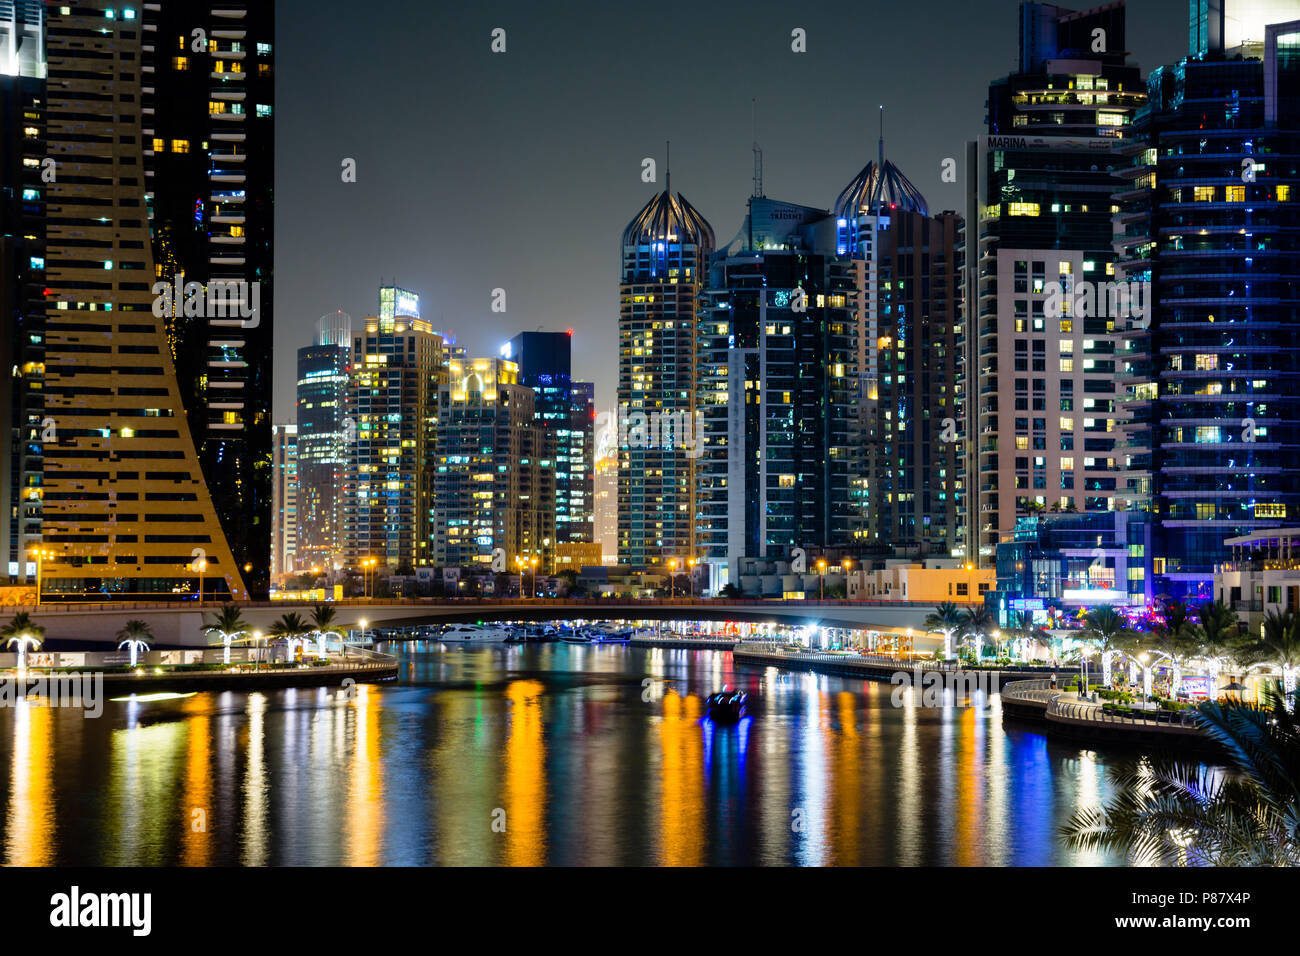 Dubai, Vereinigte Arabische Emirate - Juni 6, 2018: Dubai Marina modern und glänzenden Wolkenkratzern im Wasser spiegelt in der Nacht Stockfoto